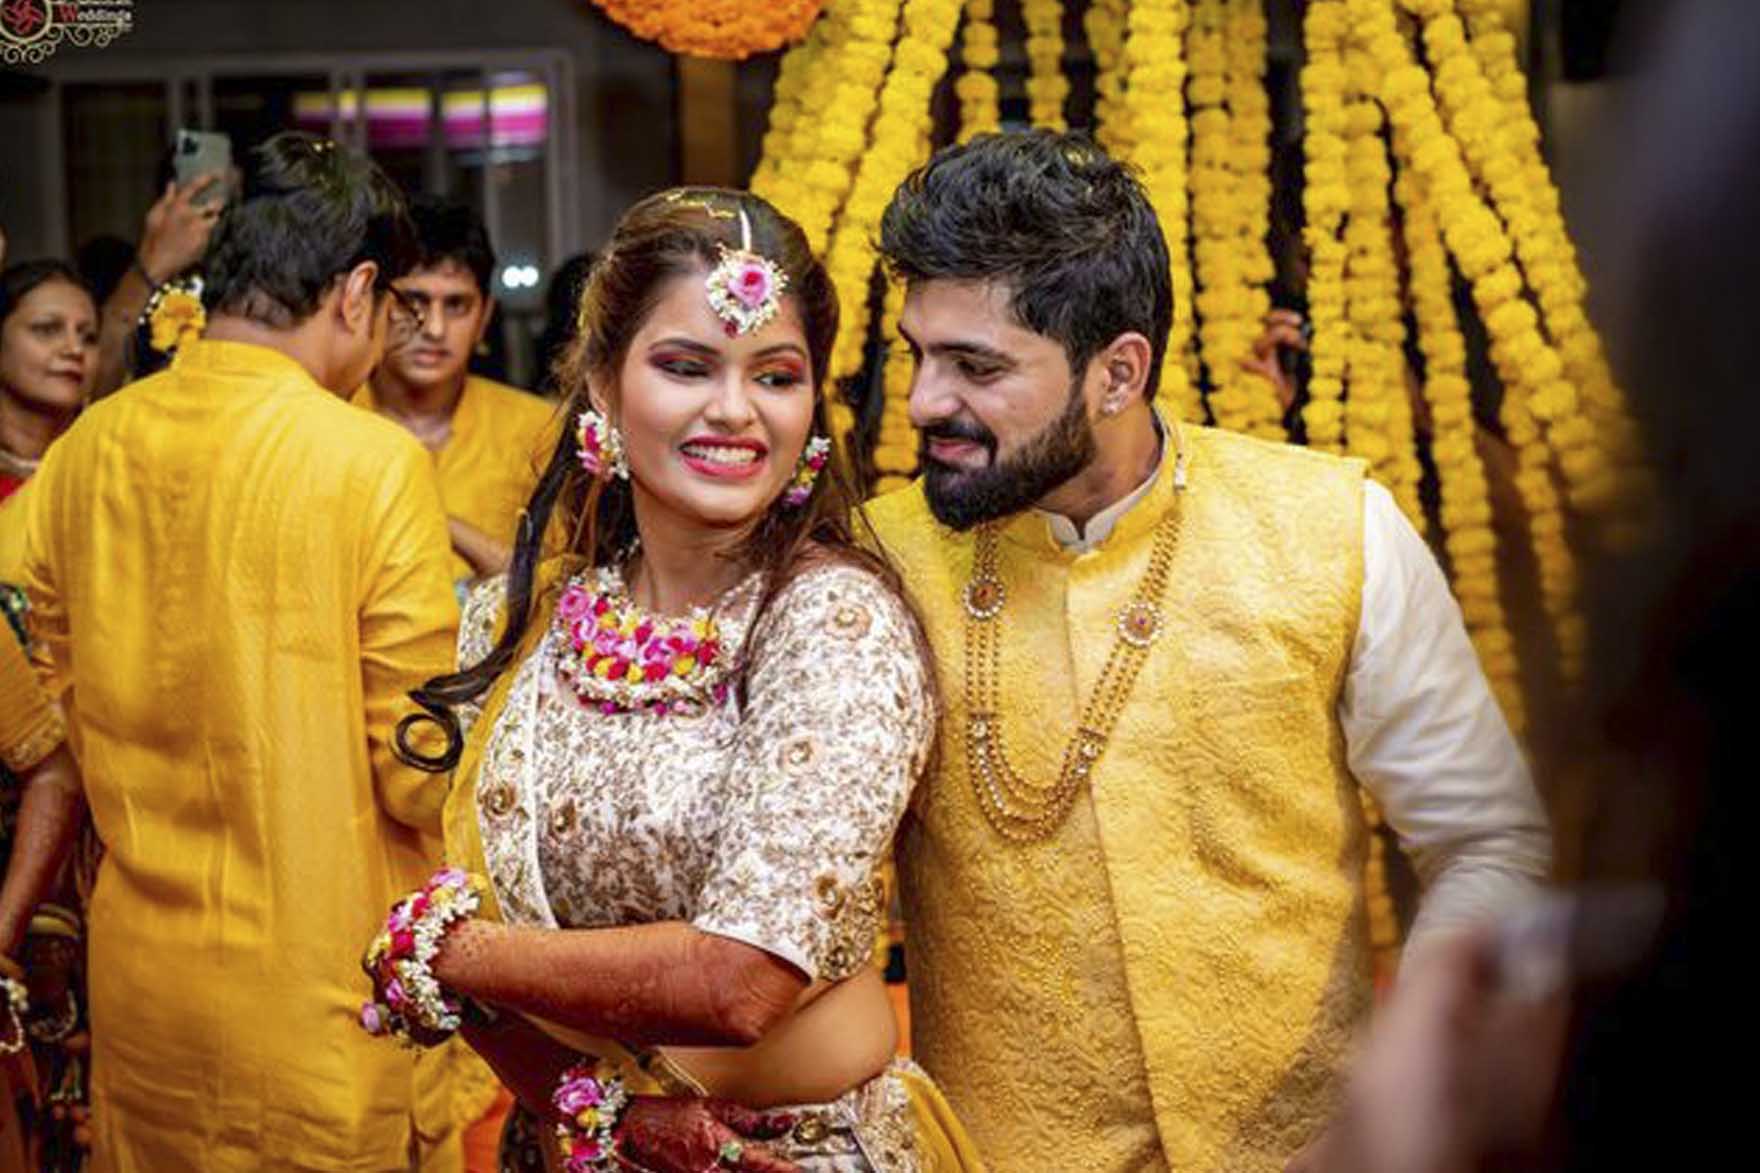 Best Destination wedding in India